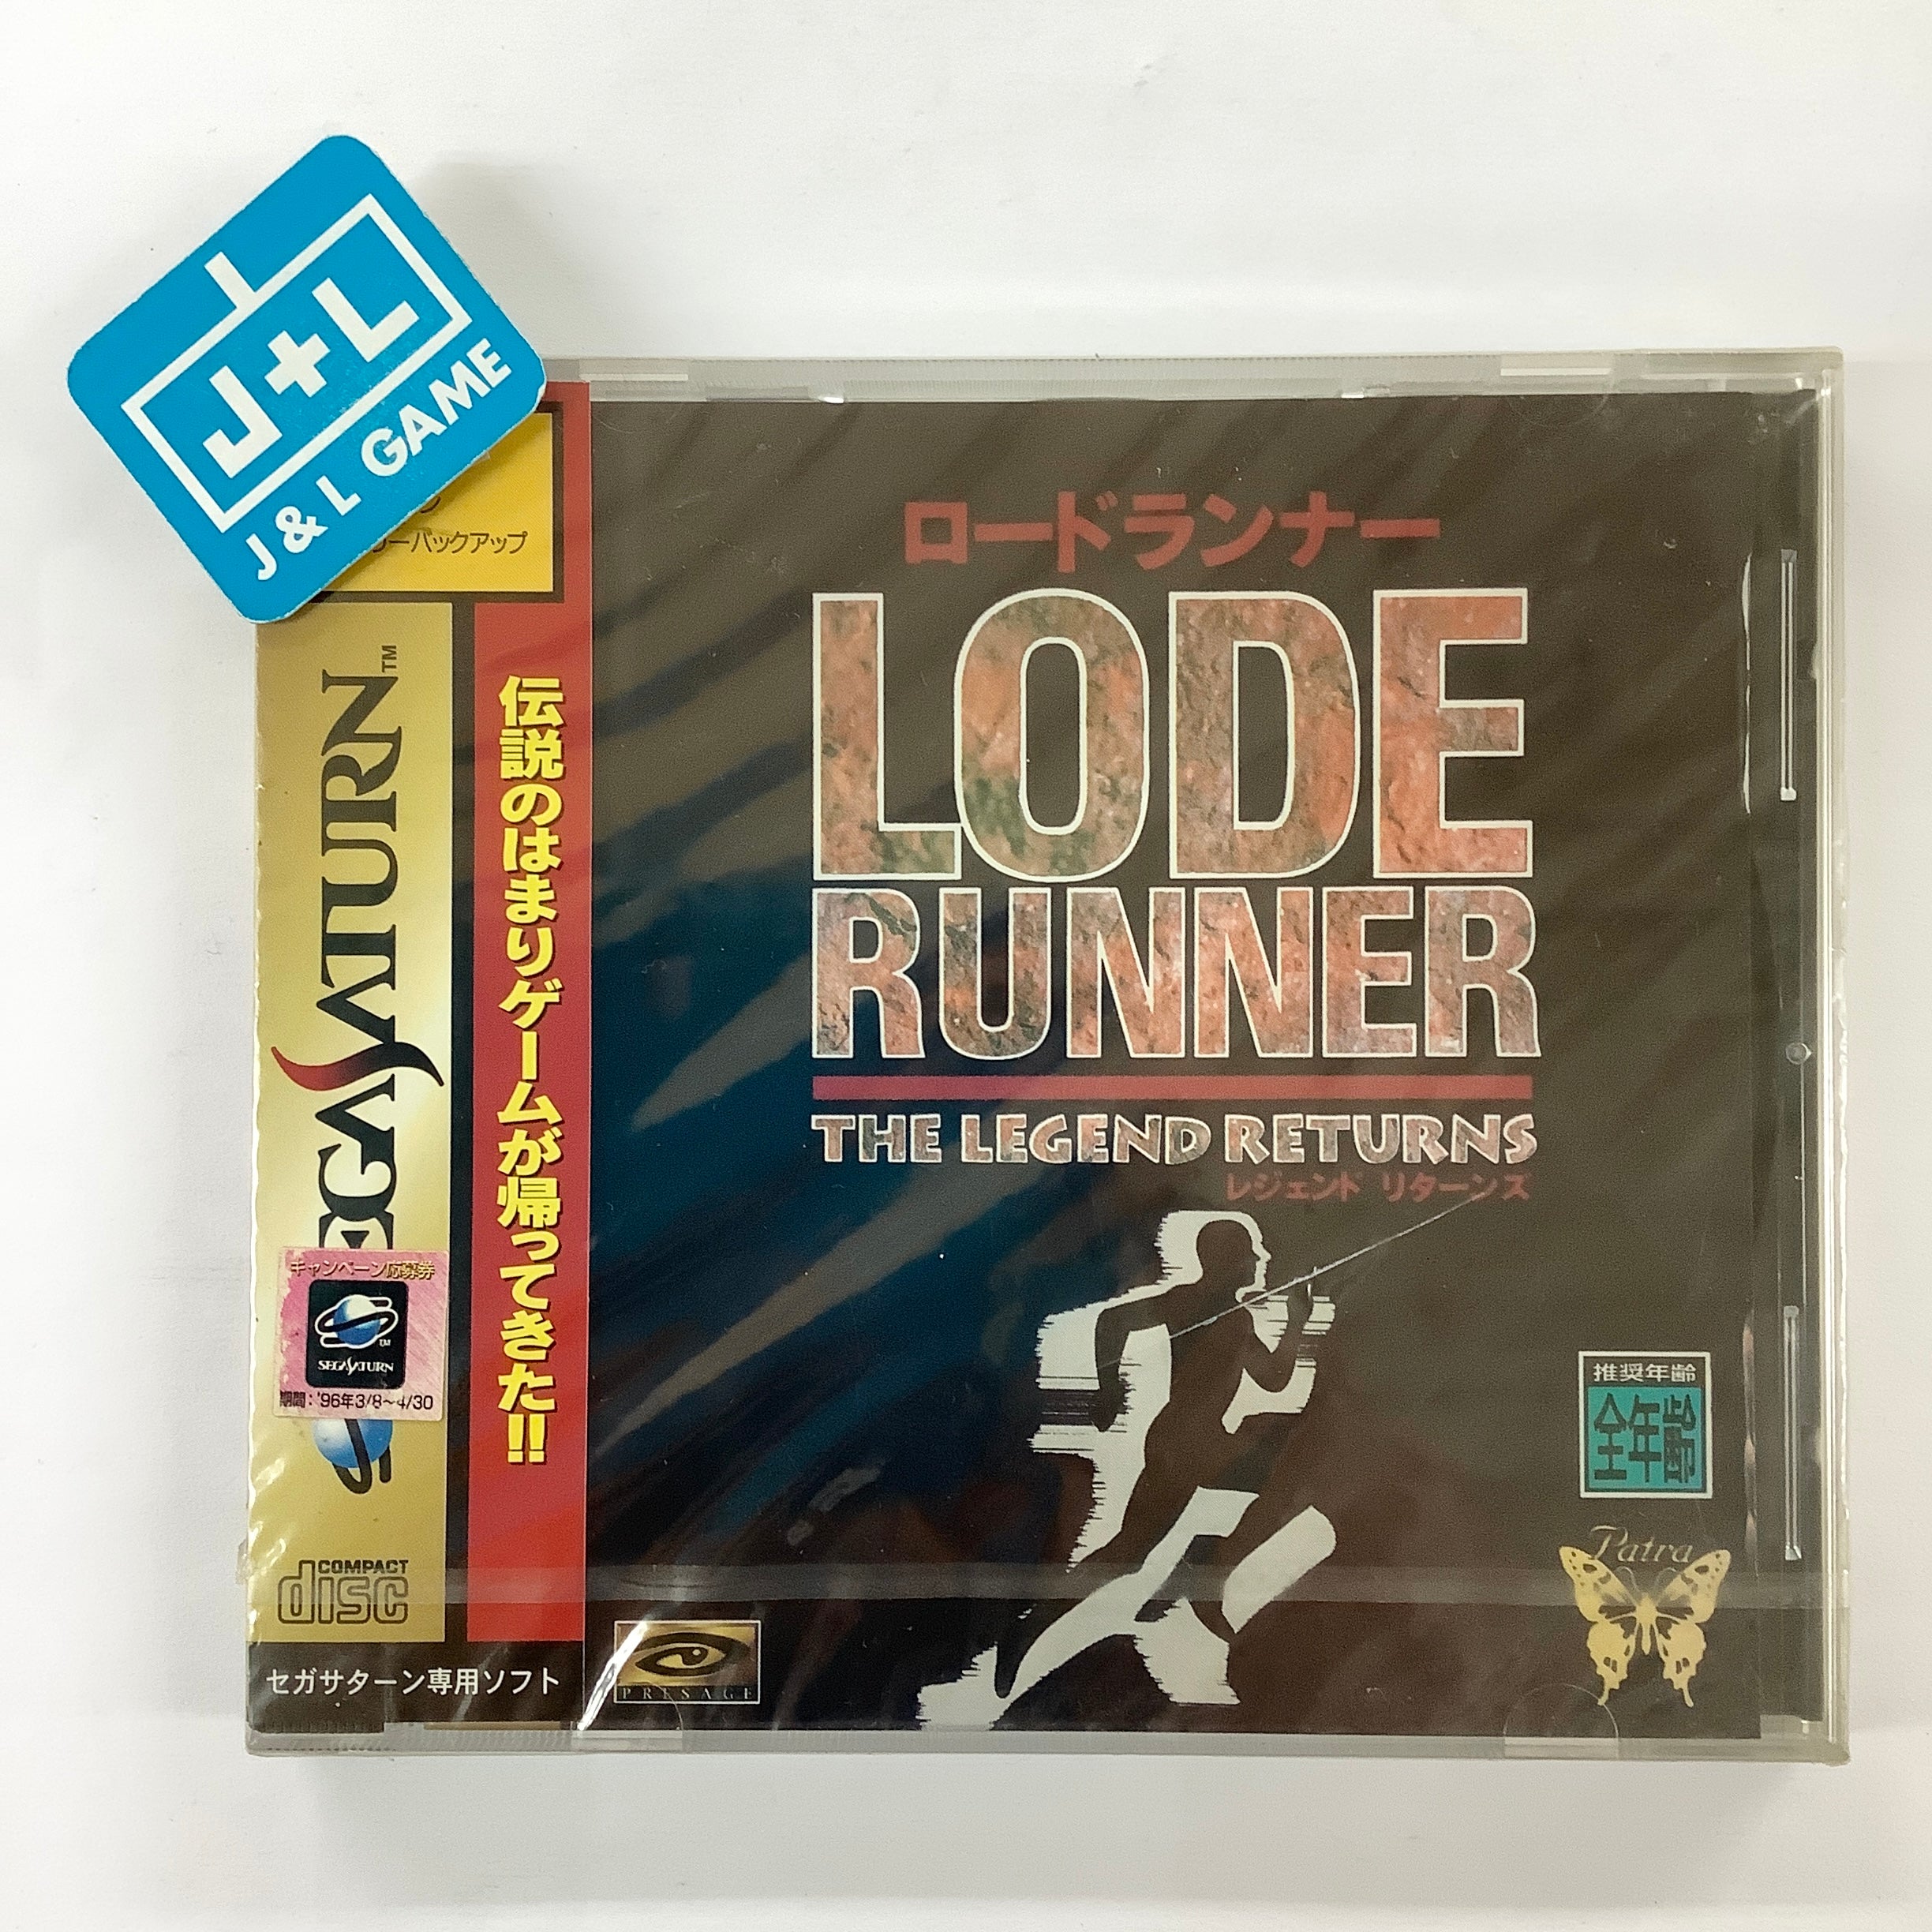 Lode Runner: The Legend Returns - (SS) SEGA Saturn (Japanese